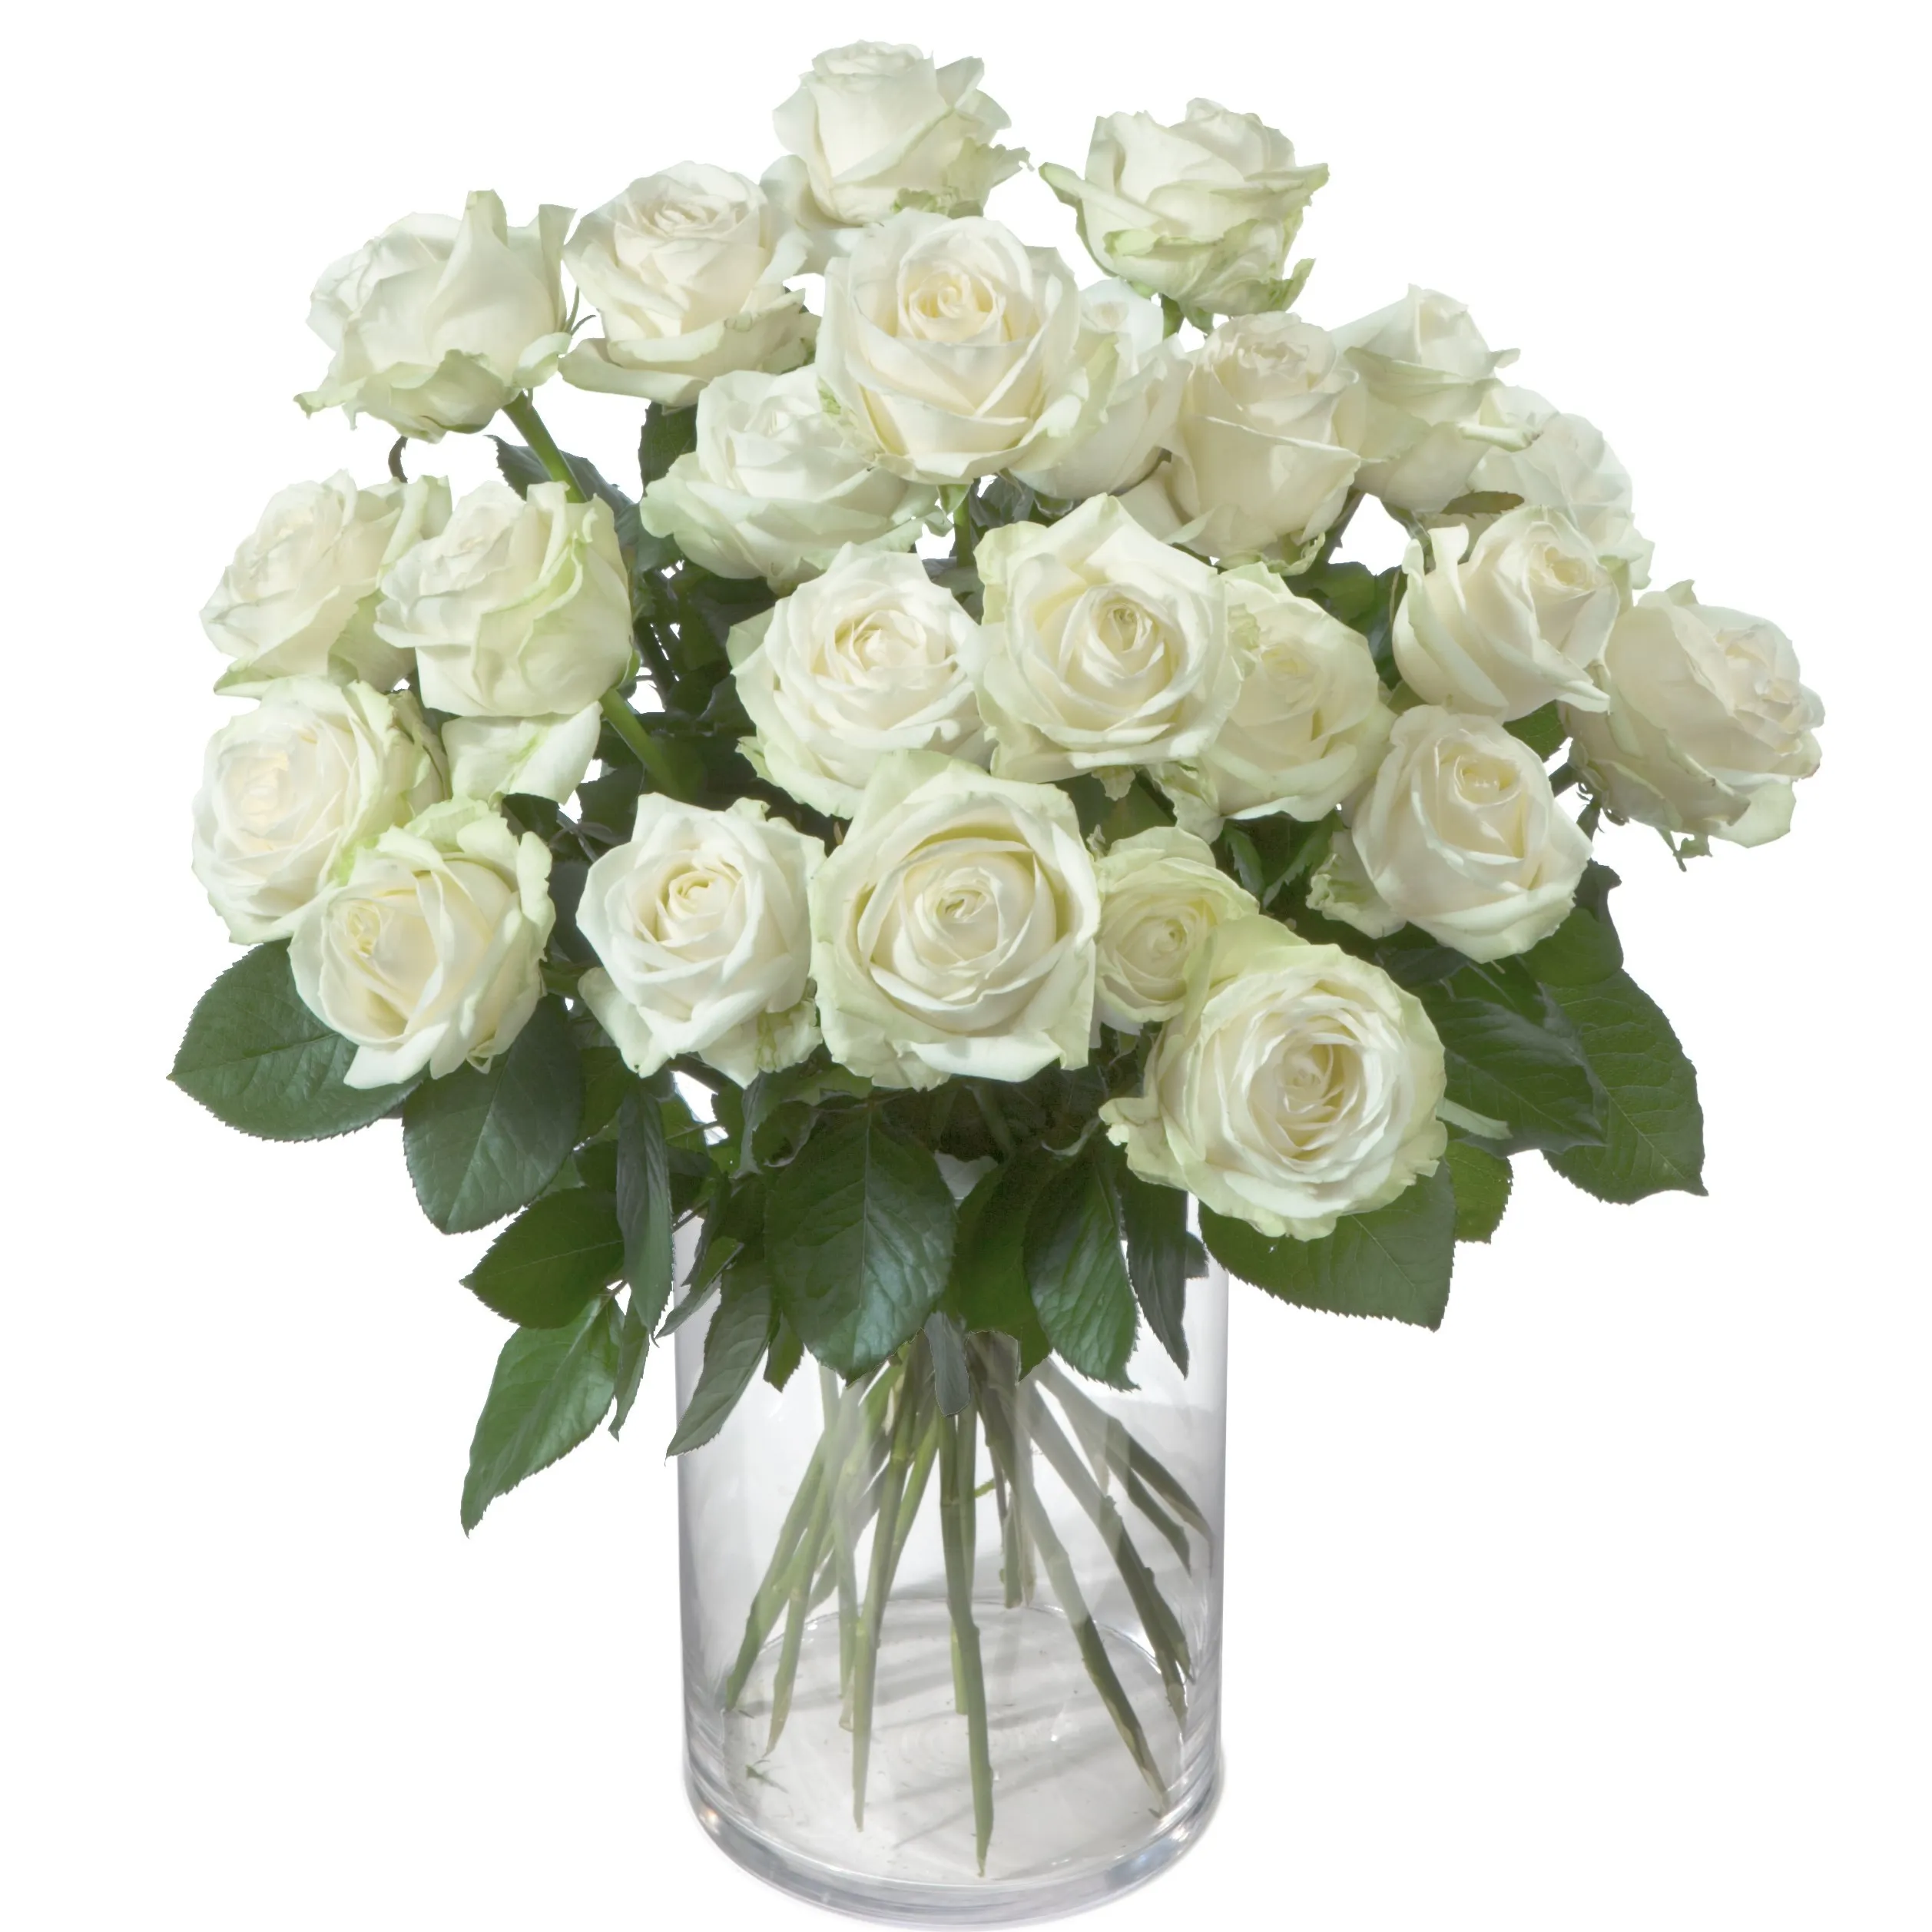 Pearl - White Roses - Georgia